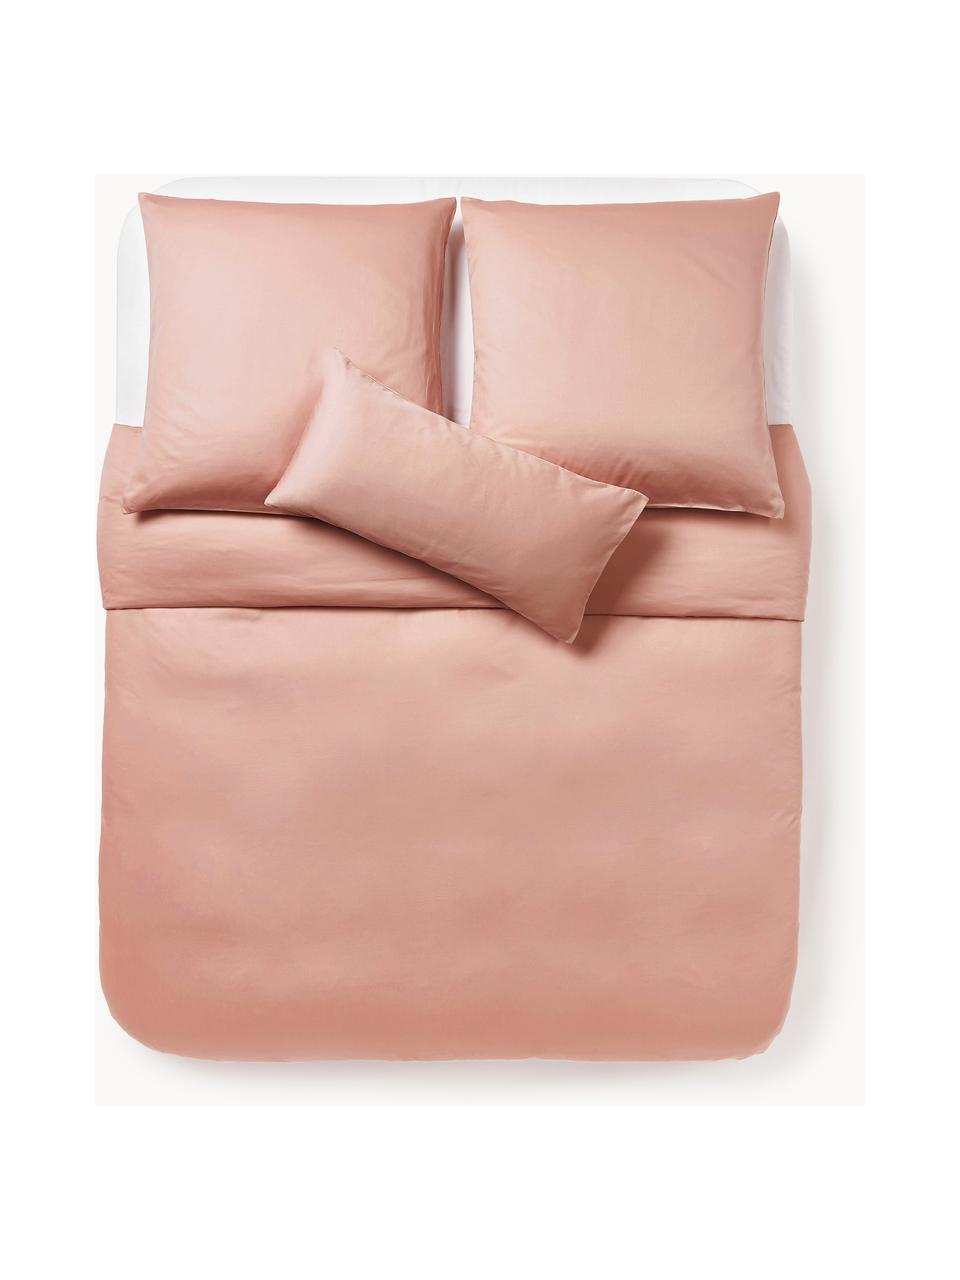 Funda de almohada de satén Comfort, Rosa palo, An 45 x L 110 cm